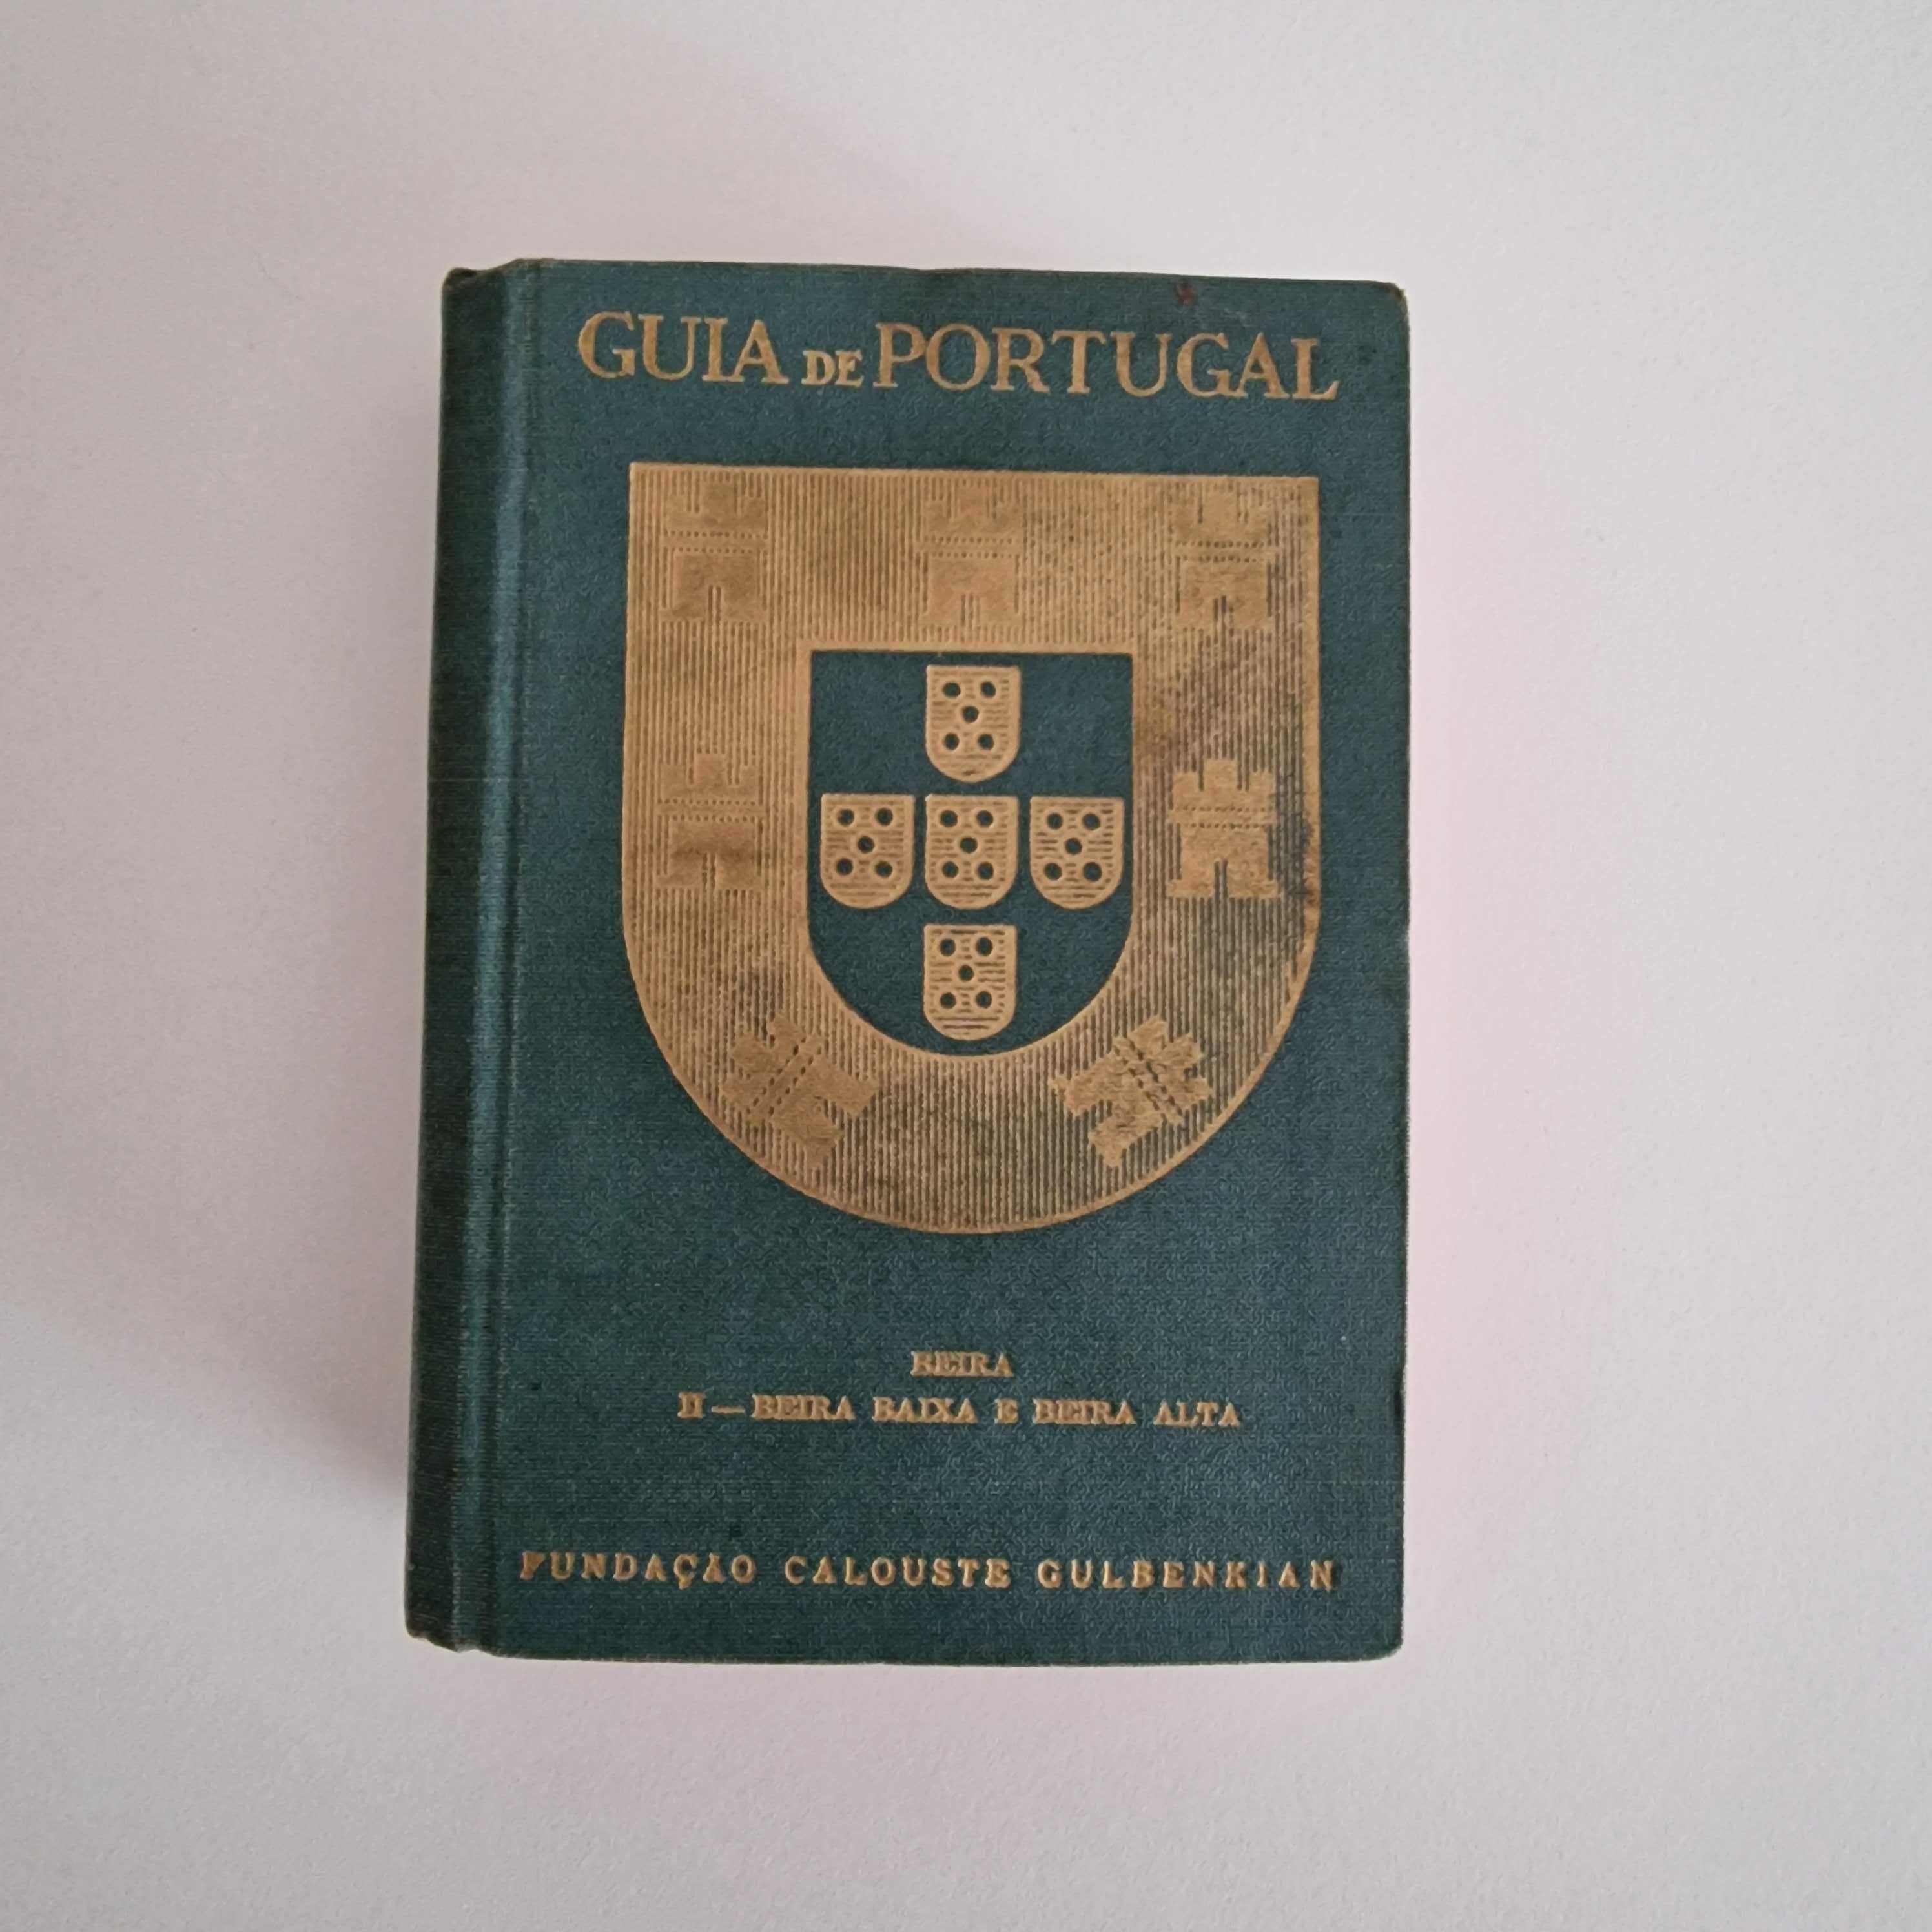 Guia de Portugal, Fundação Calouste Gulbenkian